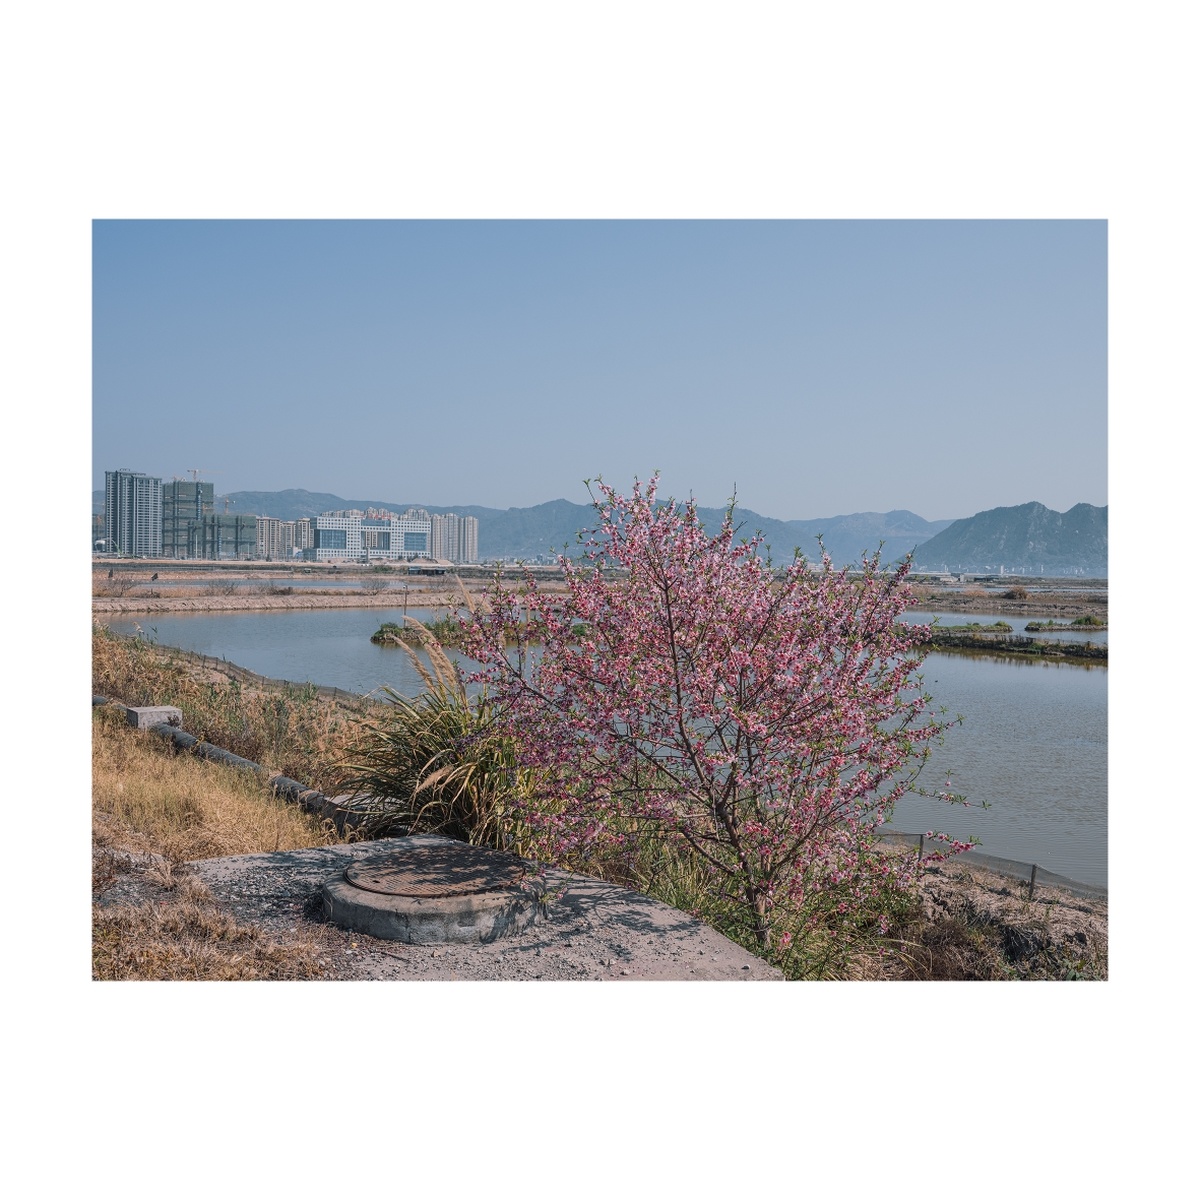 河边的樱花树 背景是山和城市